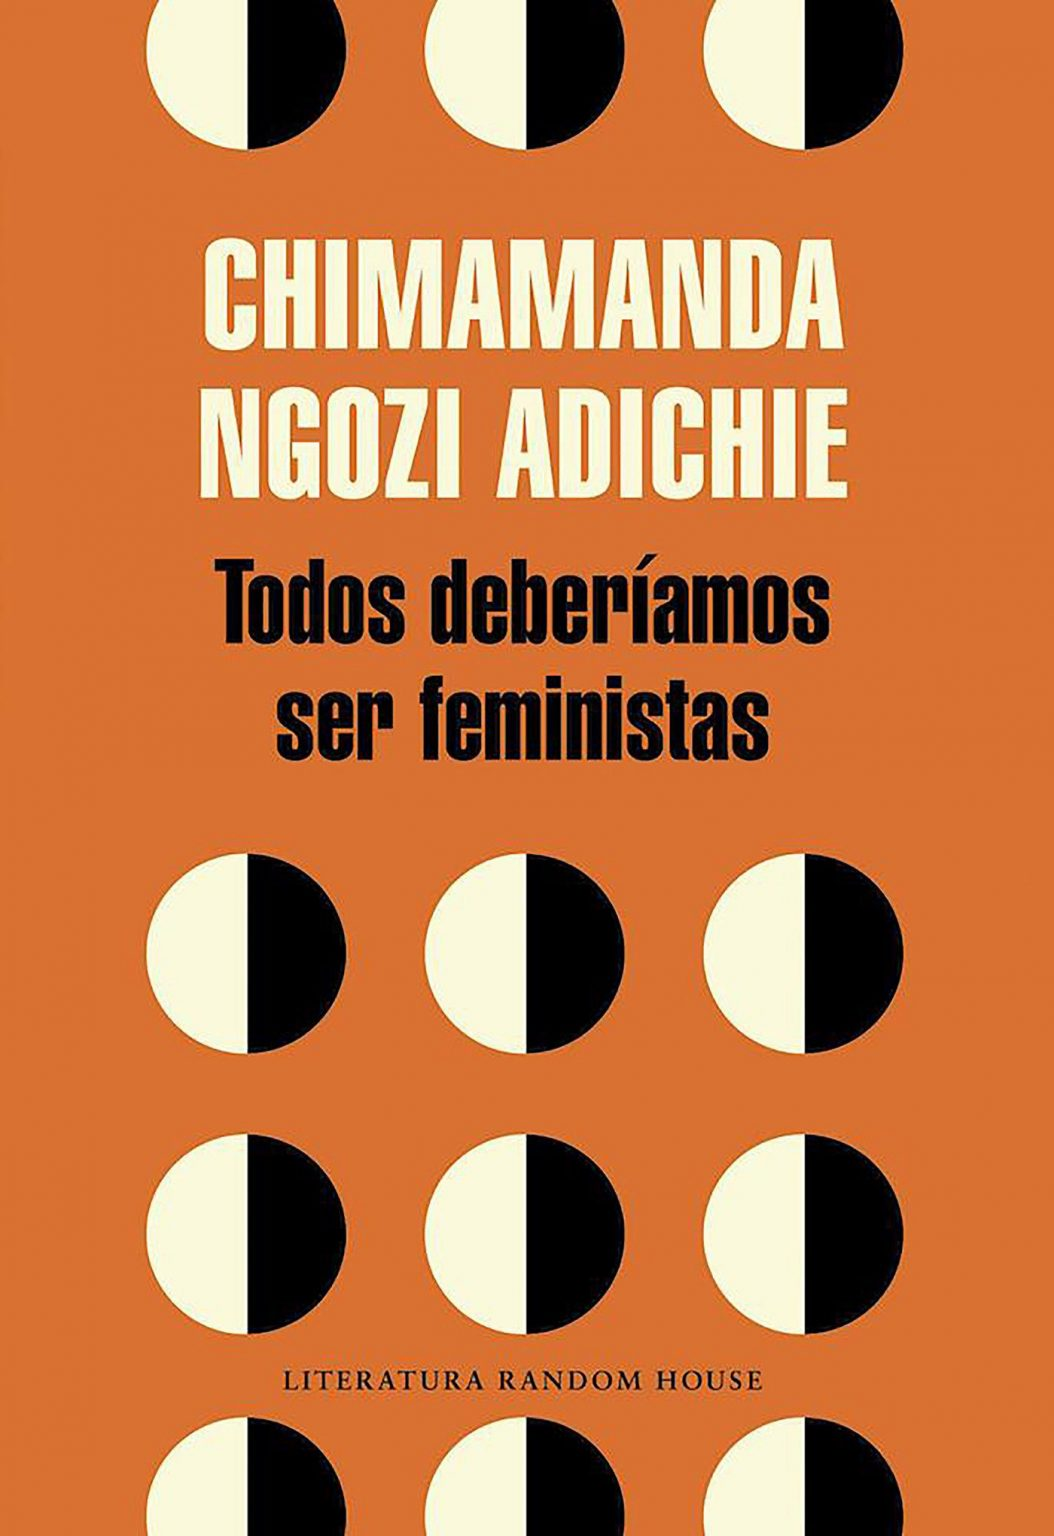 Invitación a la lectura XLII: «TODOS DEBERÍAMOS SER FEMINISTAS” de CHIMAMANDA NGOZI.